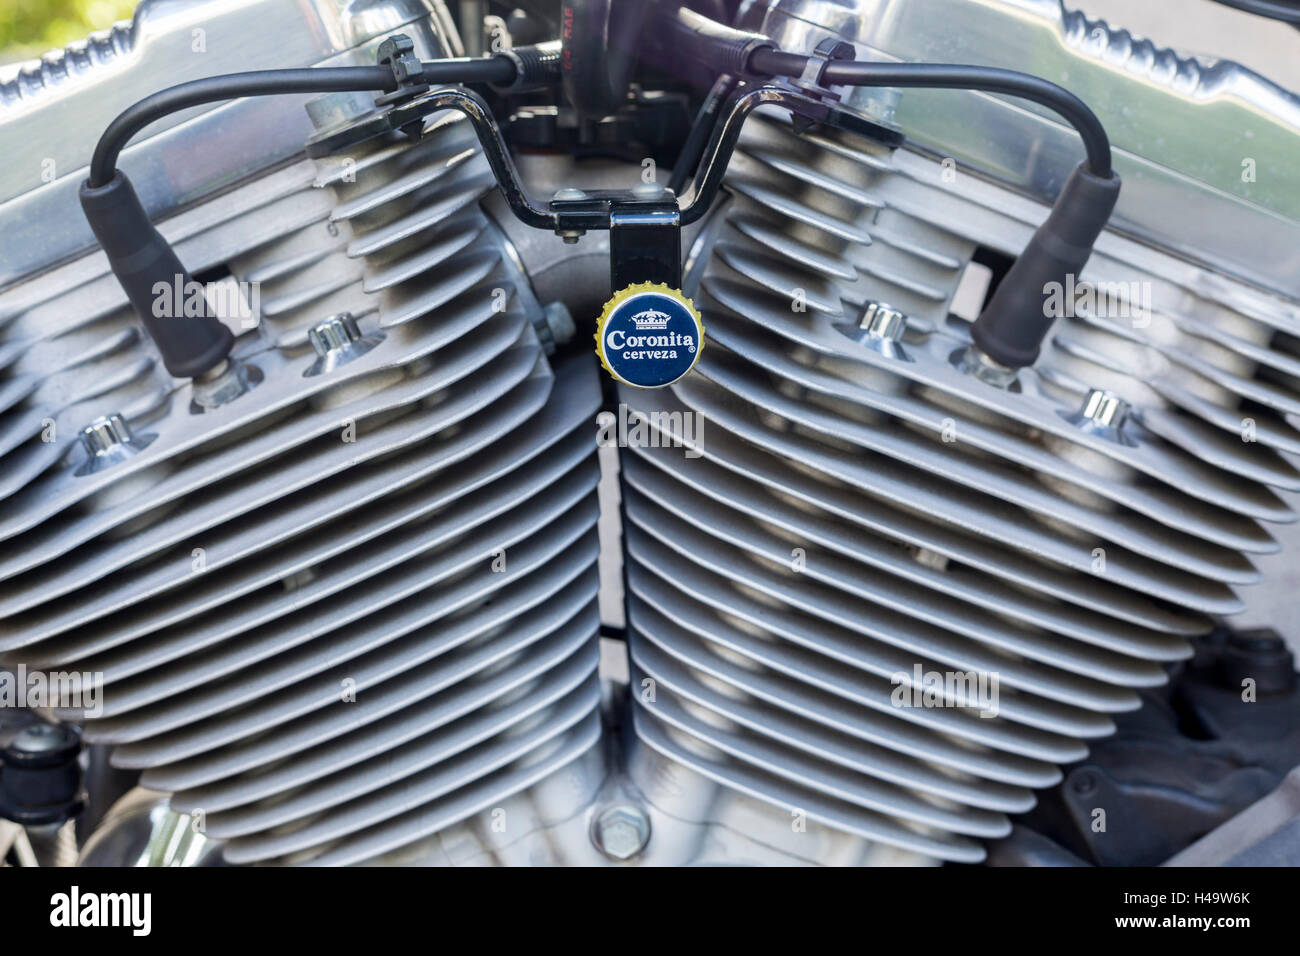 Moteur Harley Davidson avec Coronitas décoration de bouteille sur le support Banque D'Images